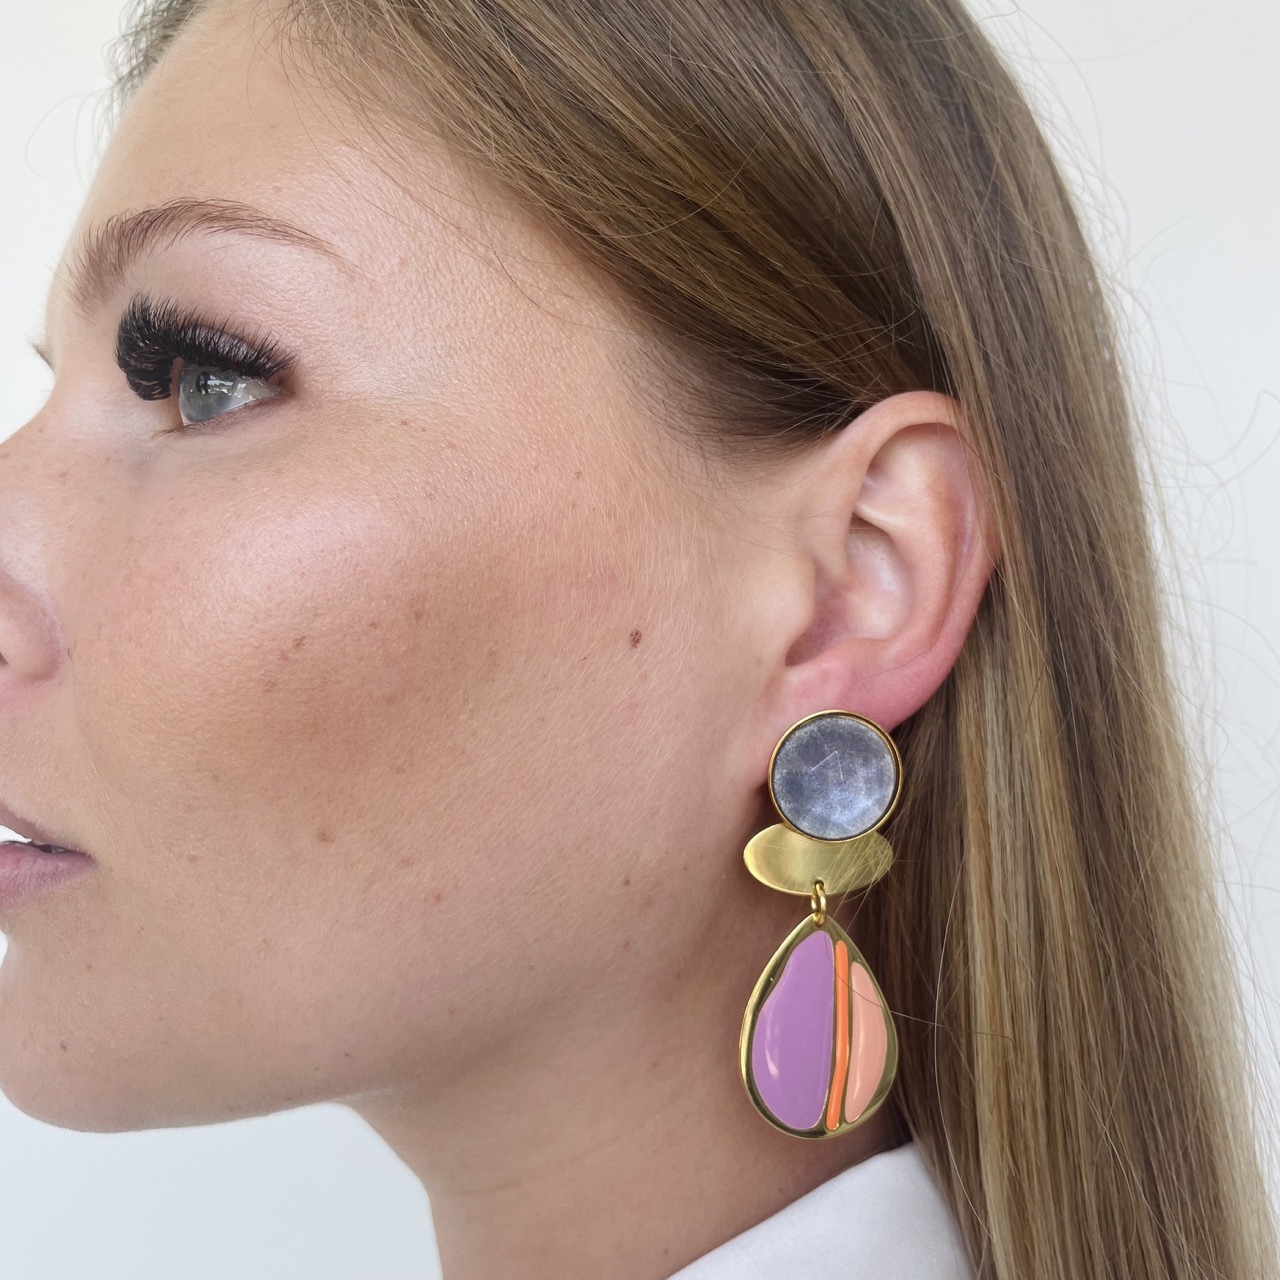 Lisa pastels earrings